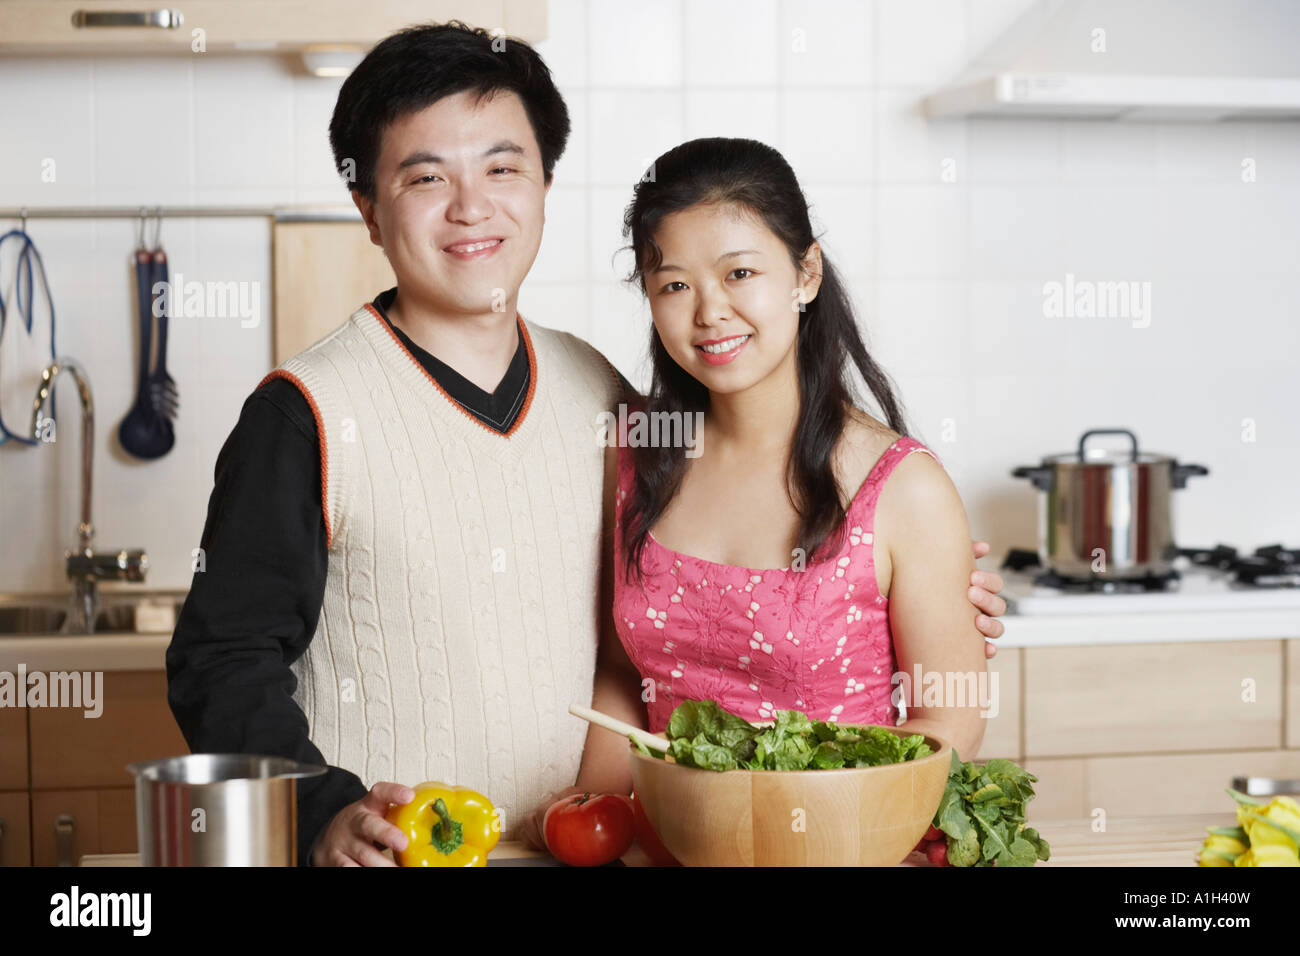 Portrait of a young man standing with a Mid adult woman dans la cuisine Banque D'Images